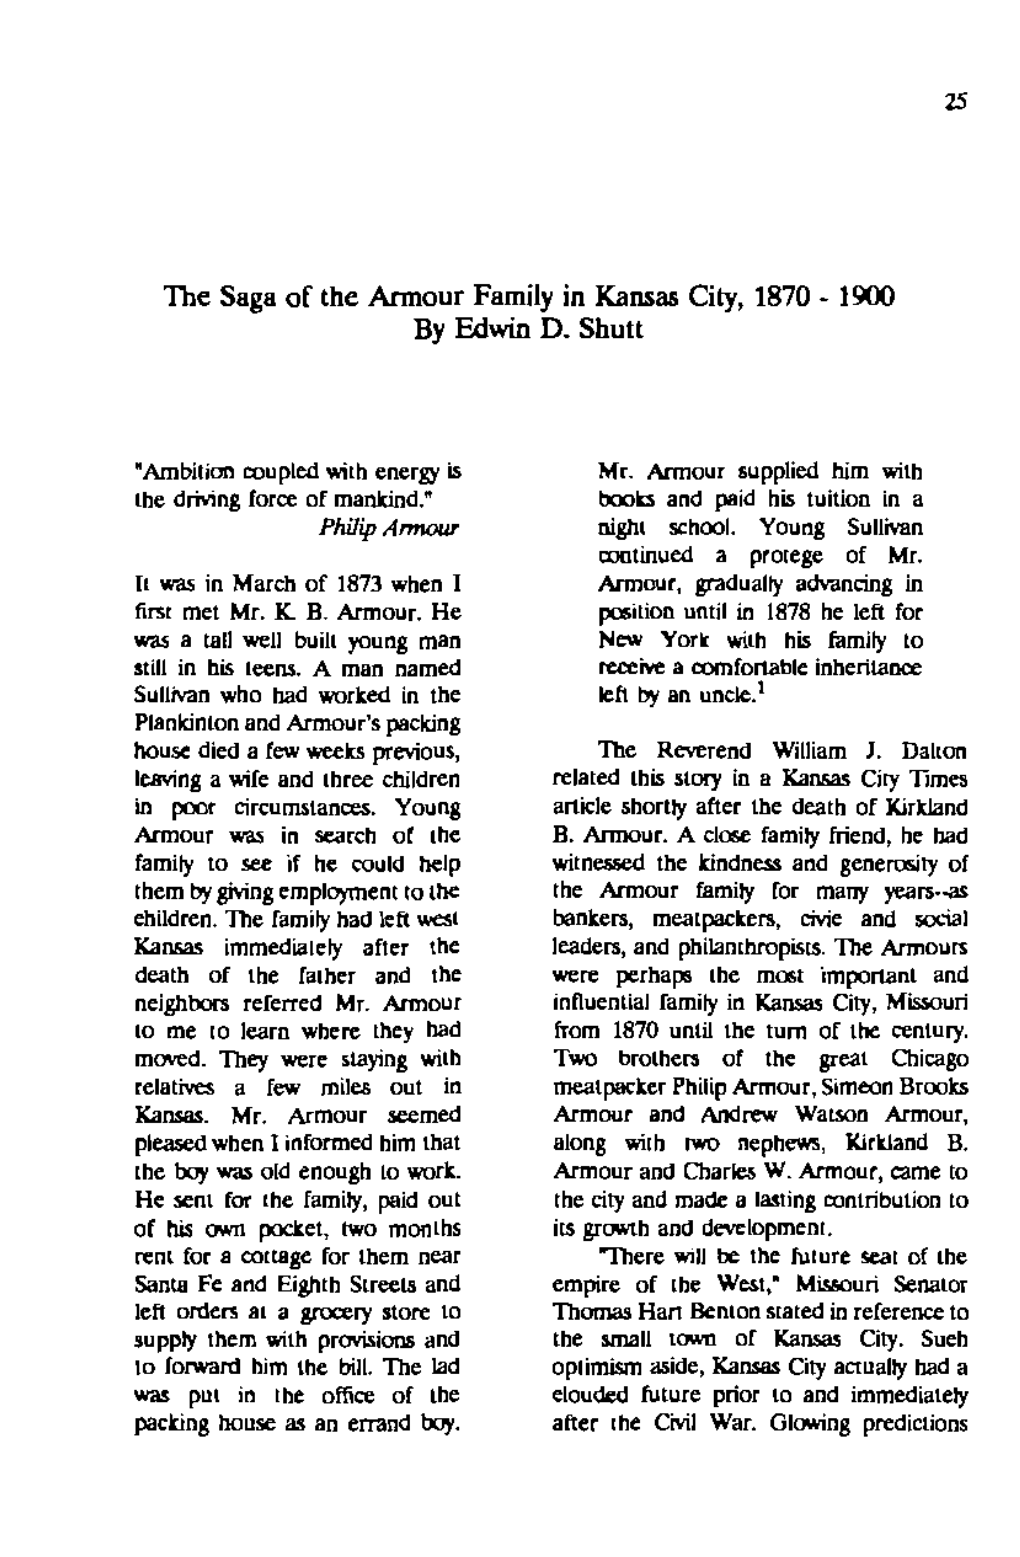 The Saga Or the Armour Family in Kansas City, 1870 - 1900 La, '986), 2-3